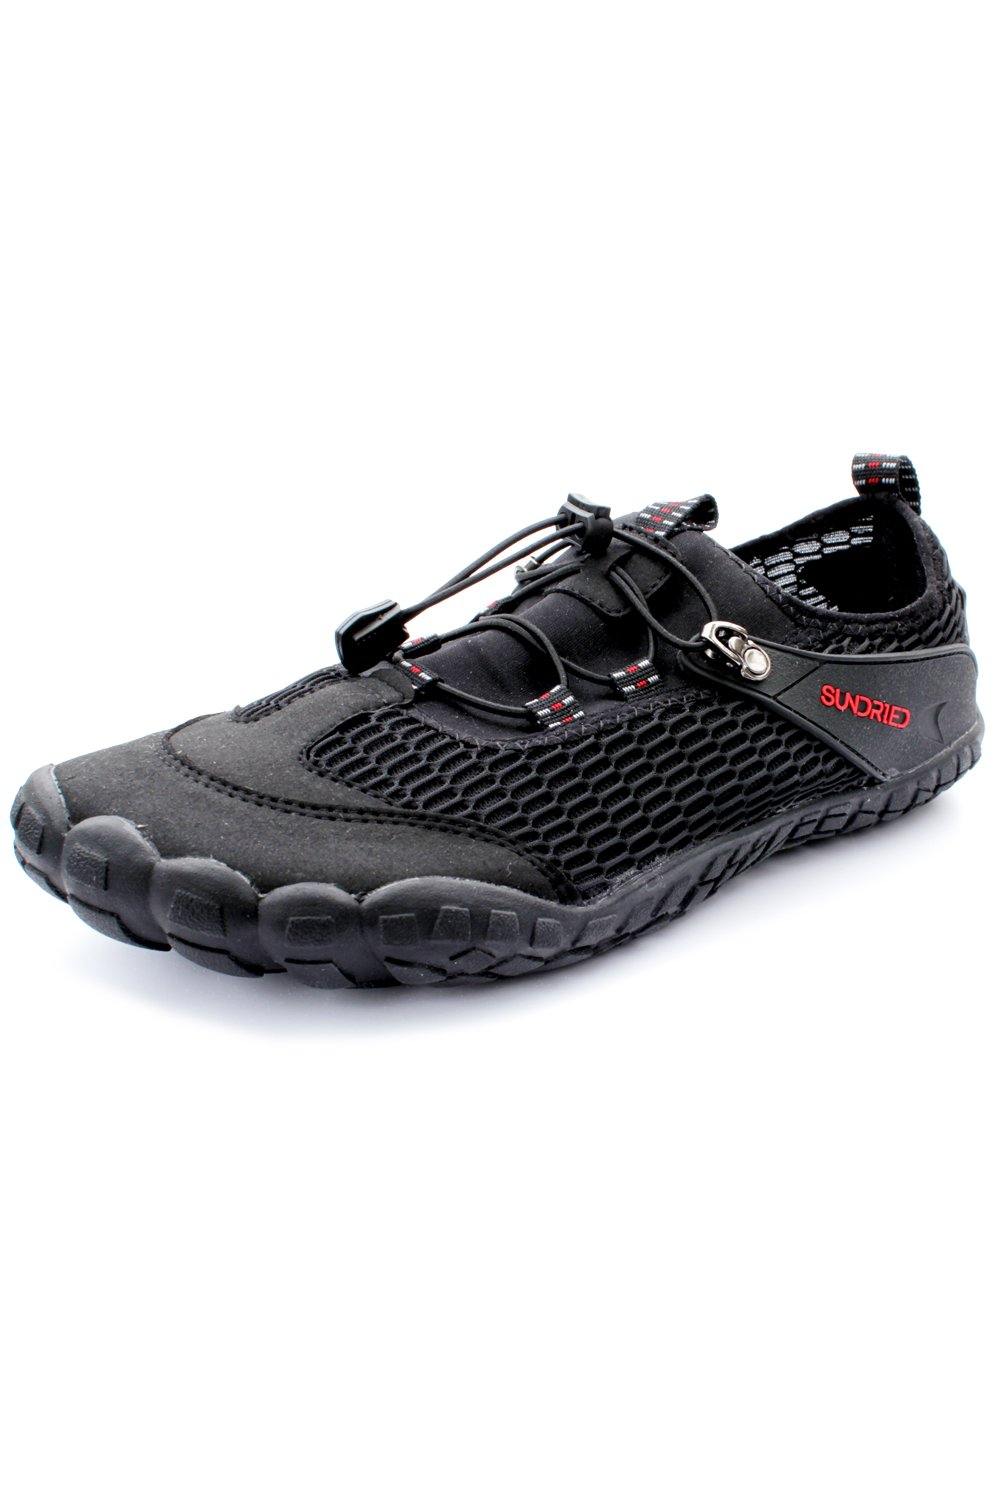 Sundried Women's Barefoot Shoes 2.5 Shoes UK 4 Black SD0307 4UK Black Activewear